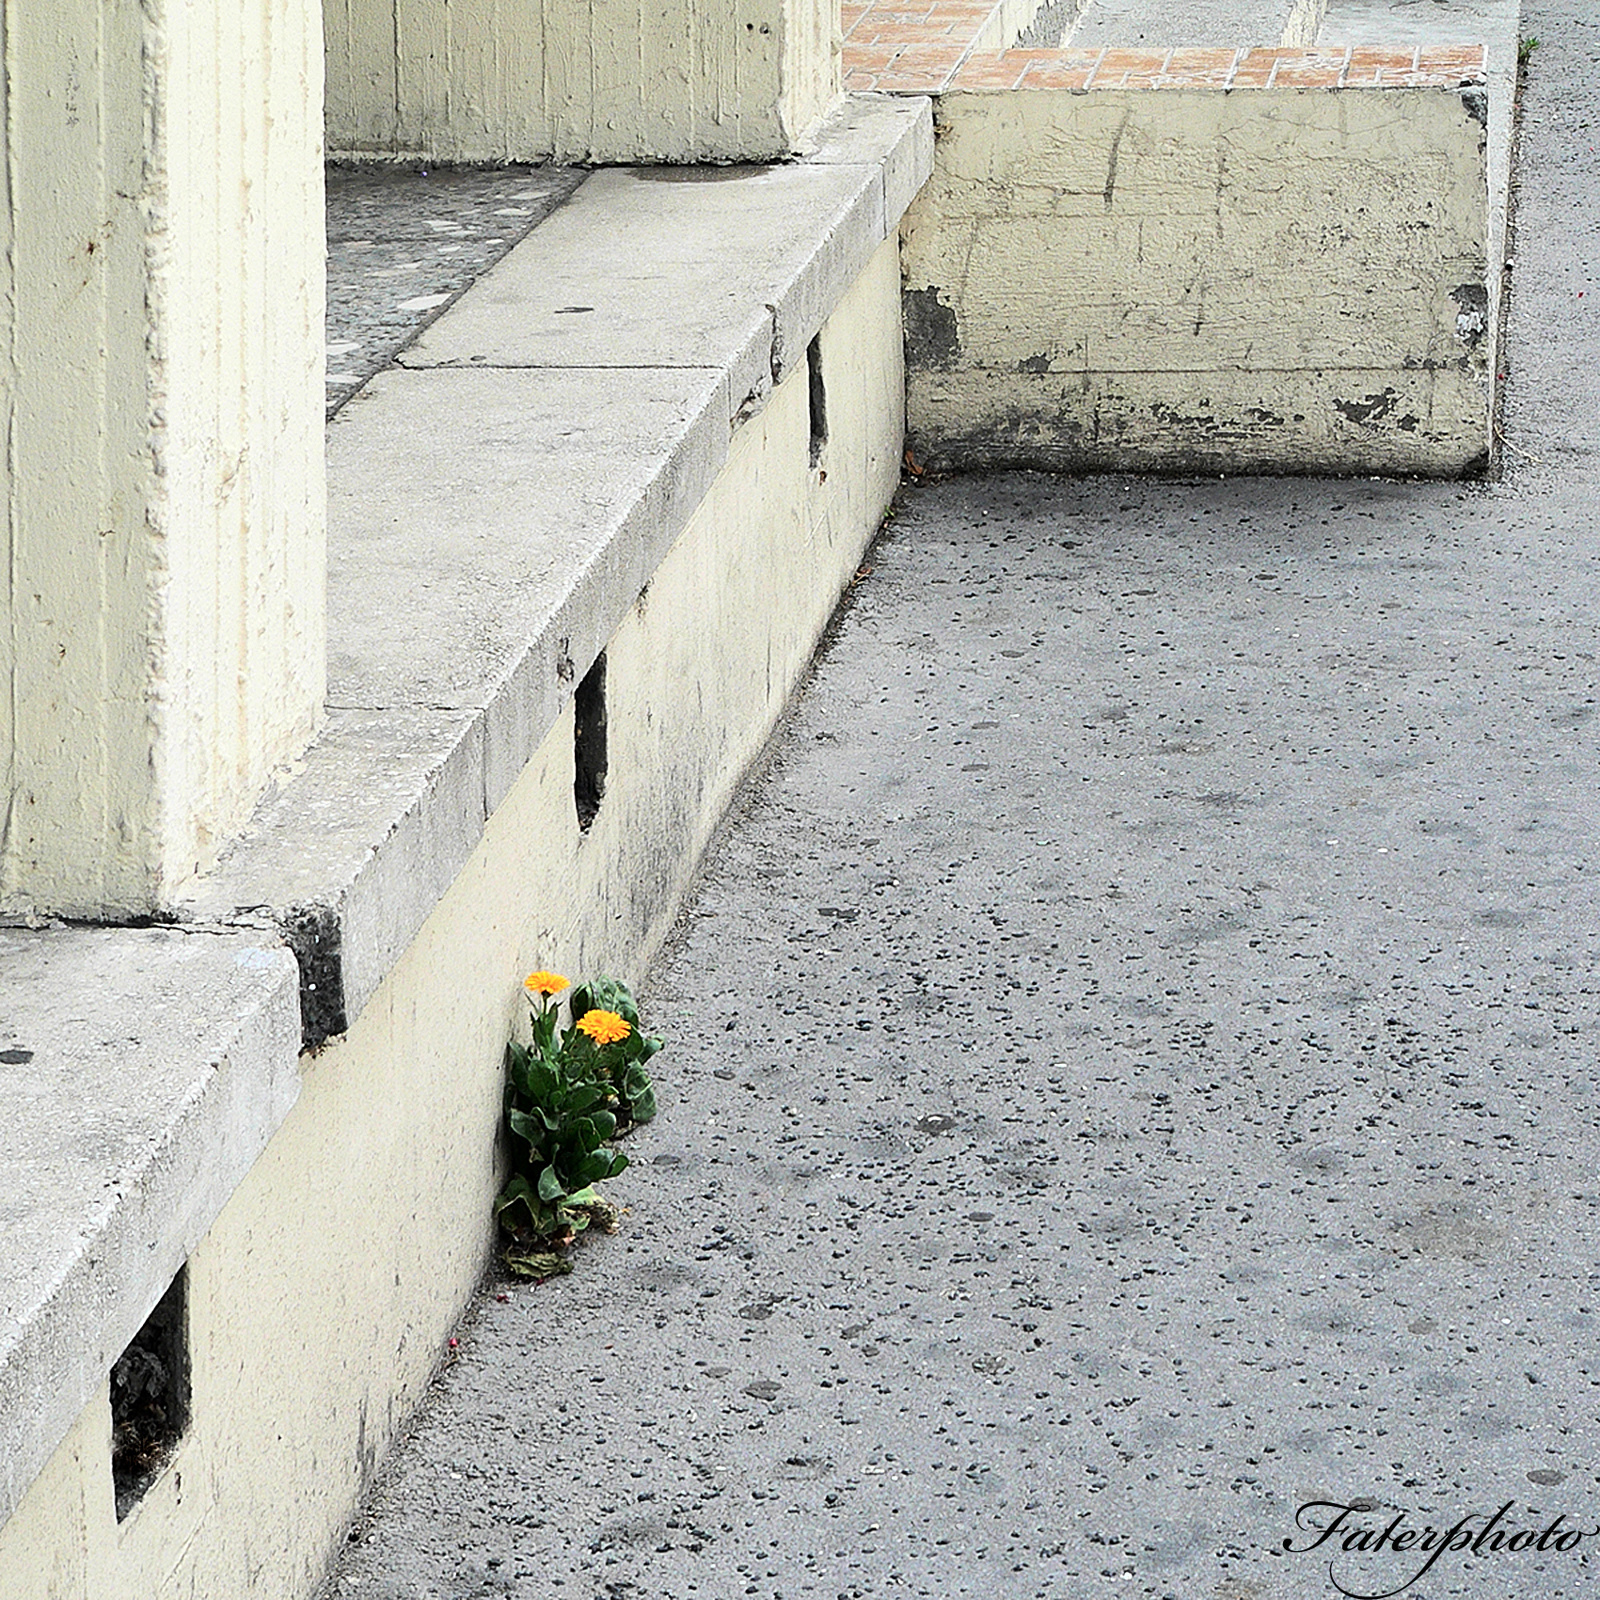 kőrőm virág a betonban